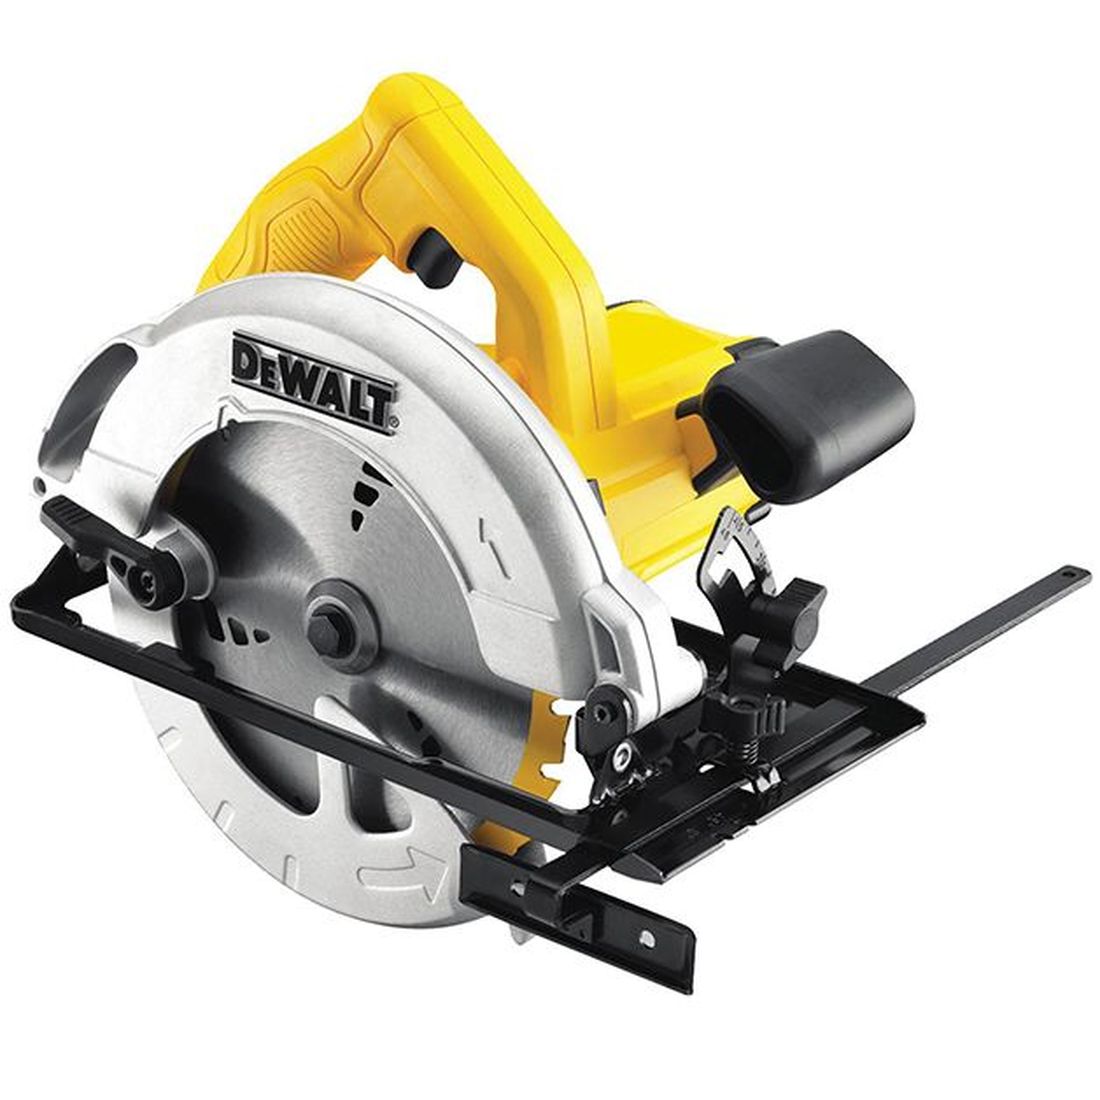 DEWALT DWE560K Compact Circular Saw & Kitbox 184mm 1350W 240V                          